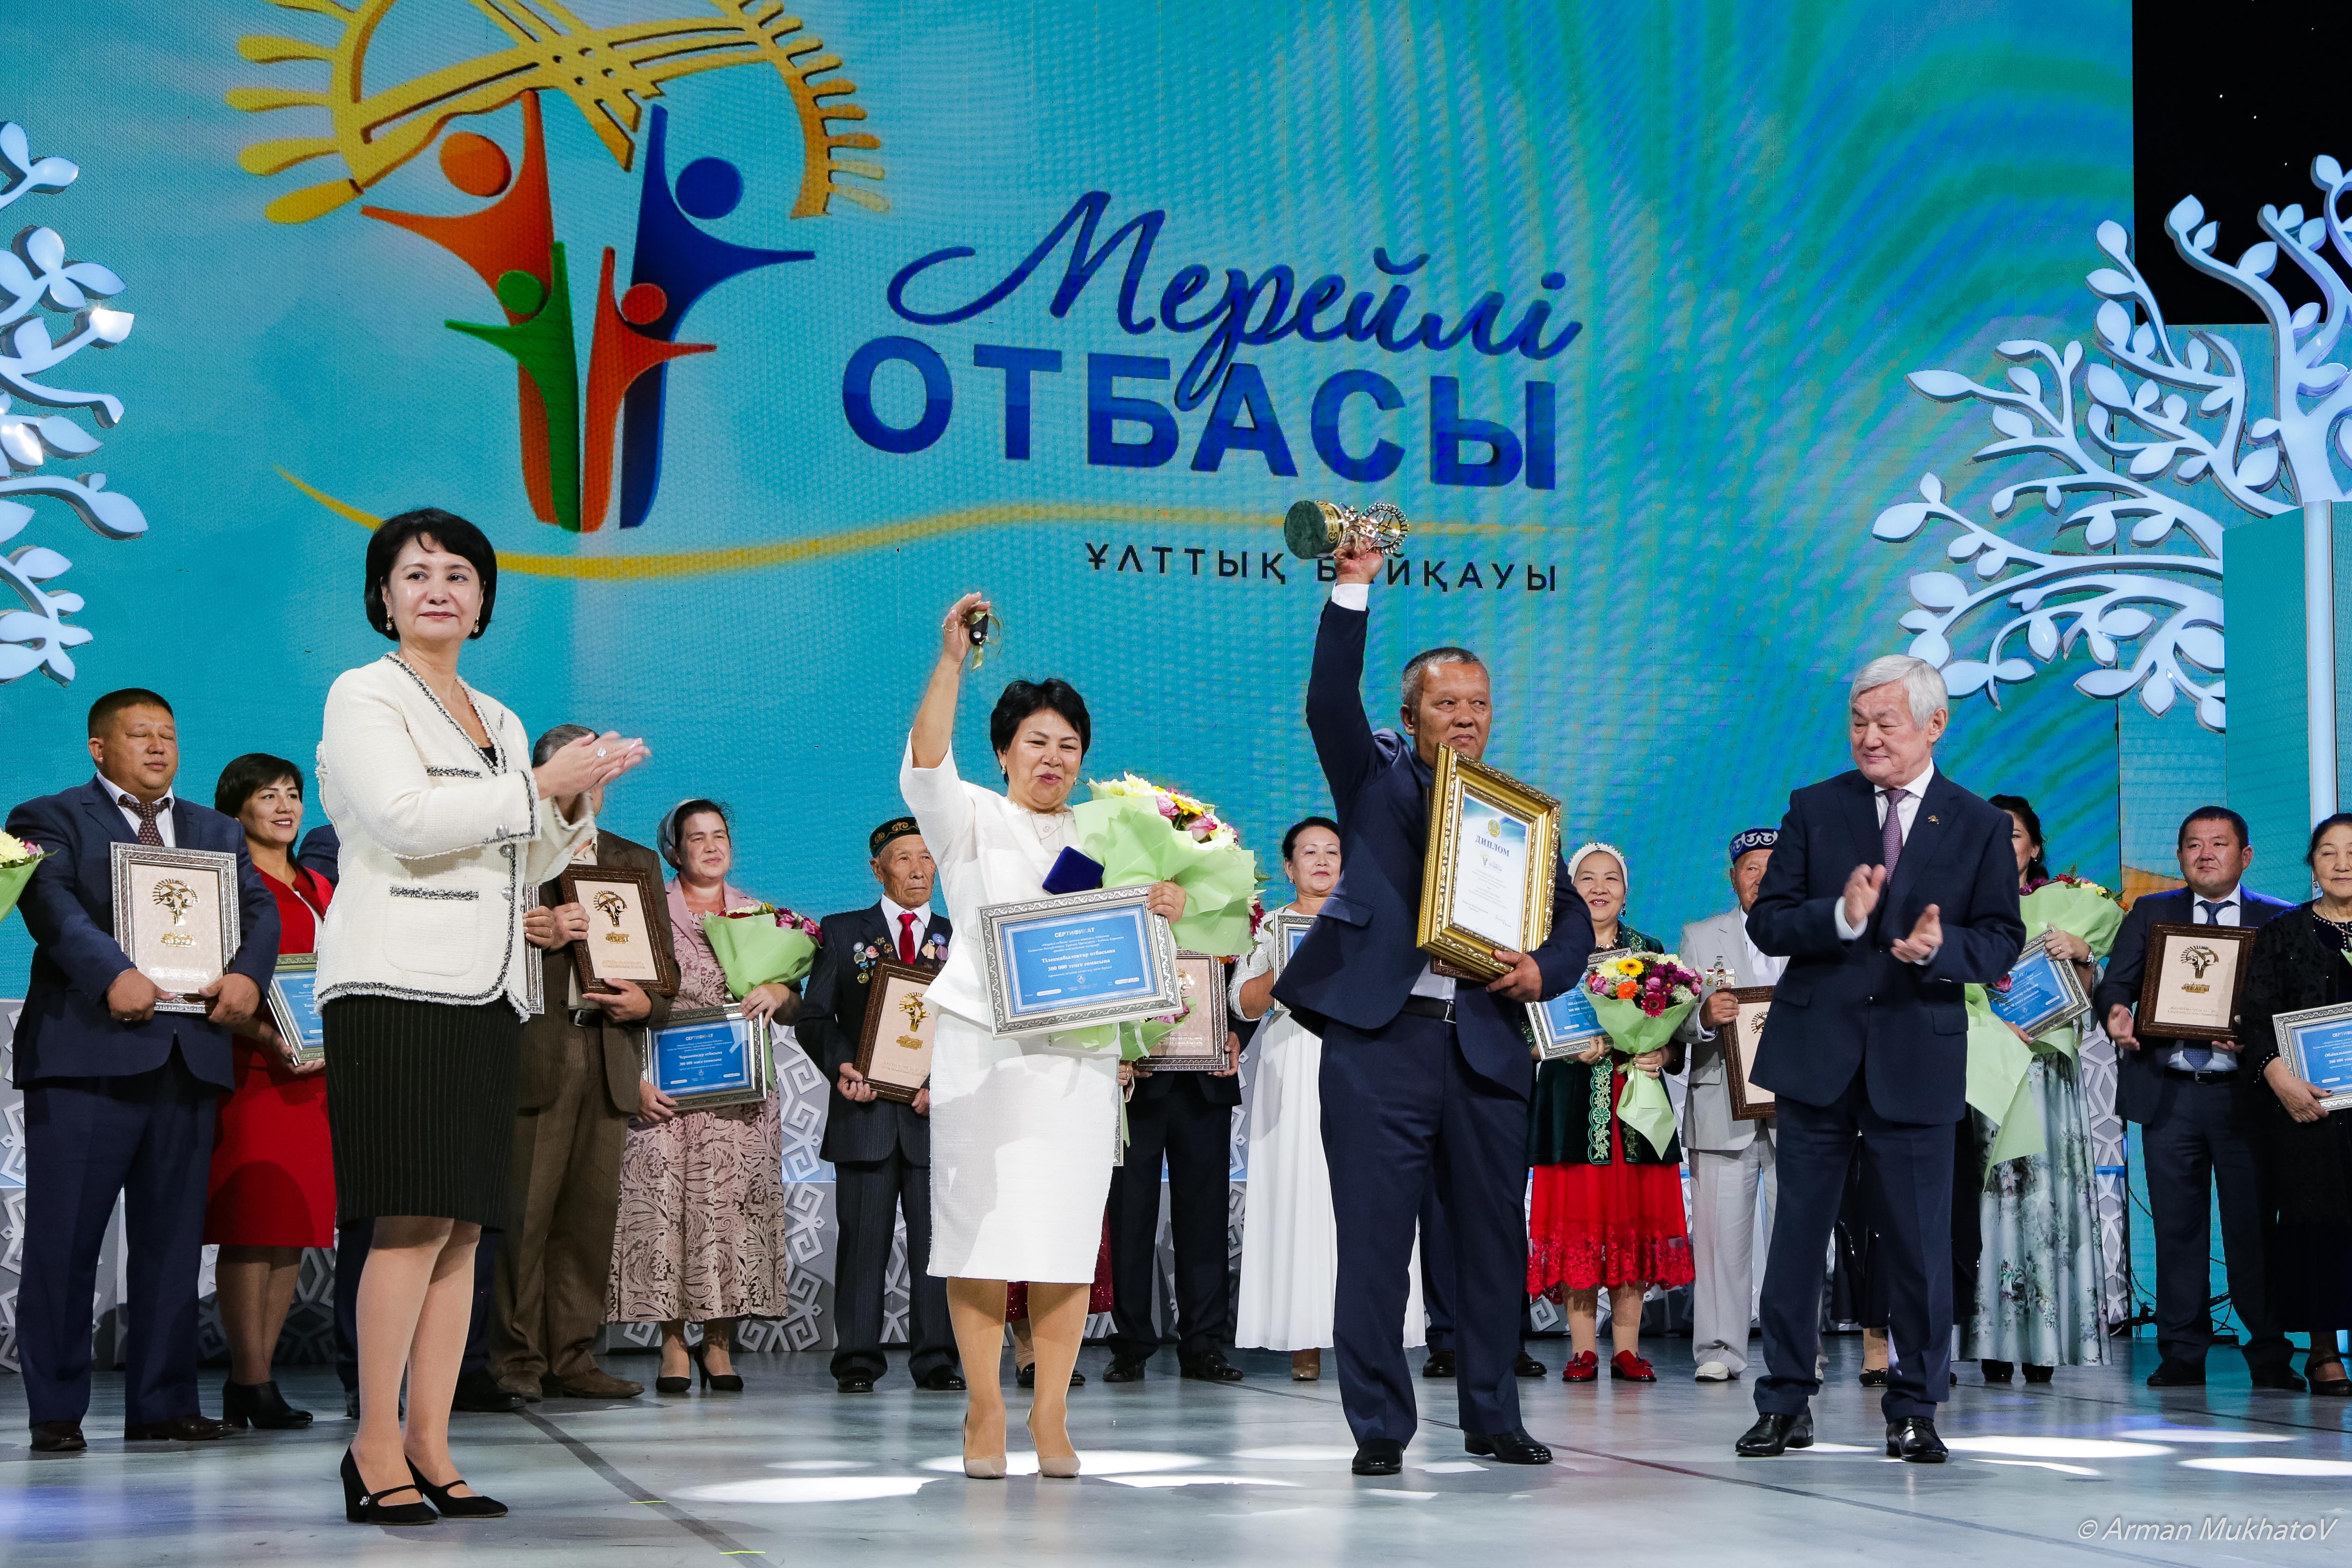 Астанада «Мерейлі отбасы» ұлттық байқауына өтінімдер қабылданып жатыр